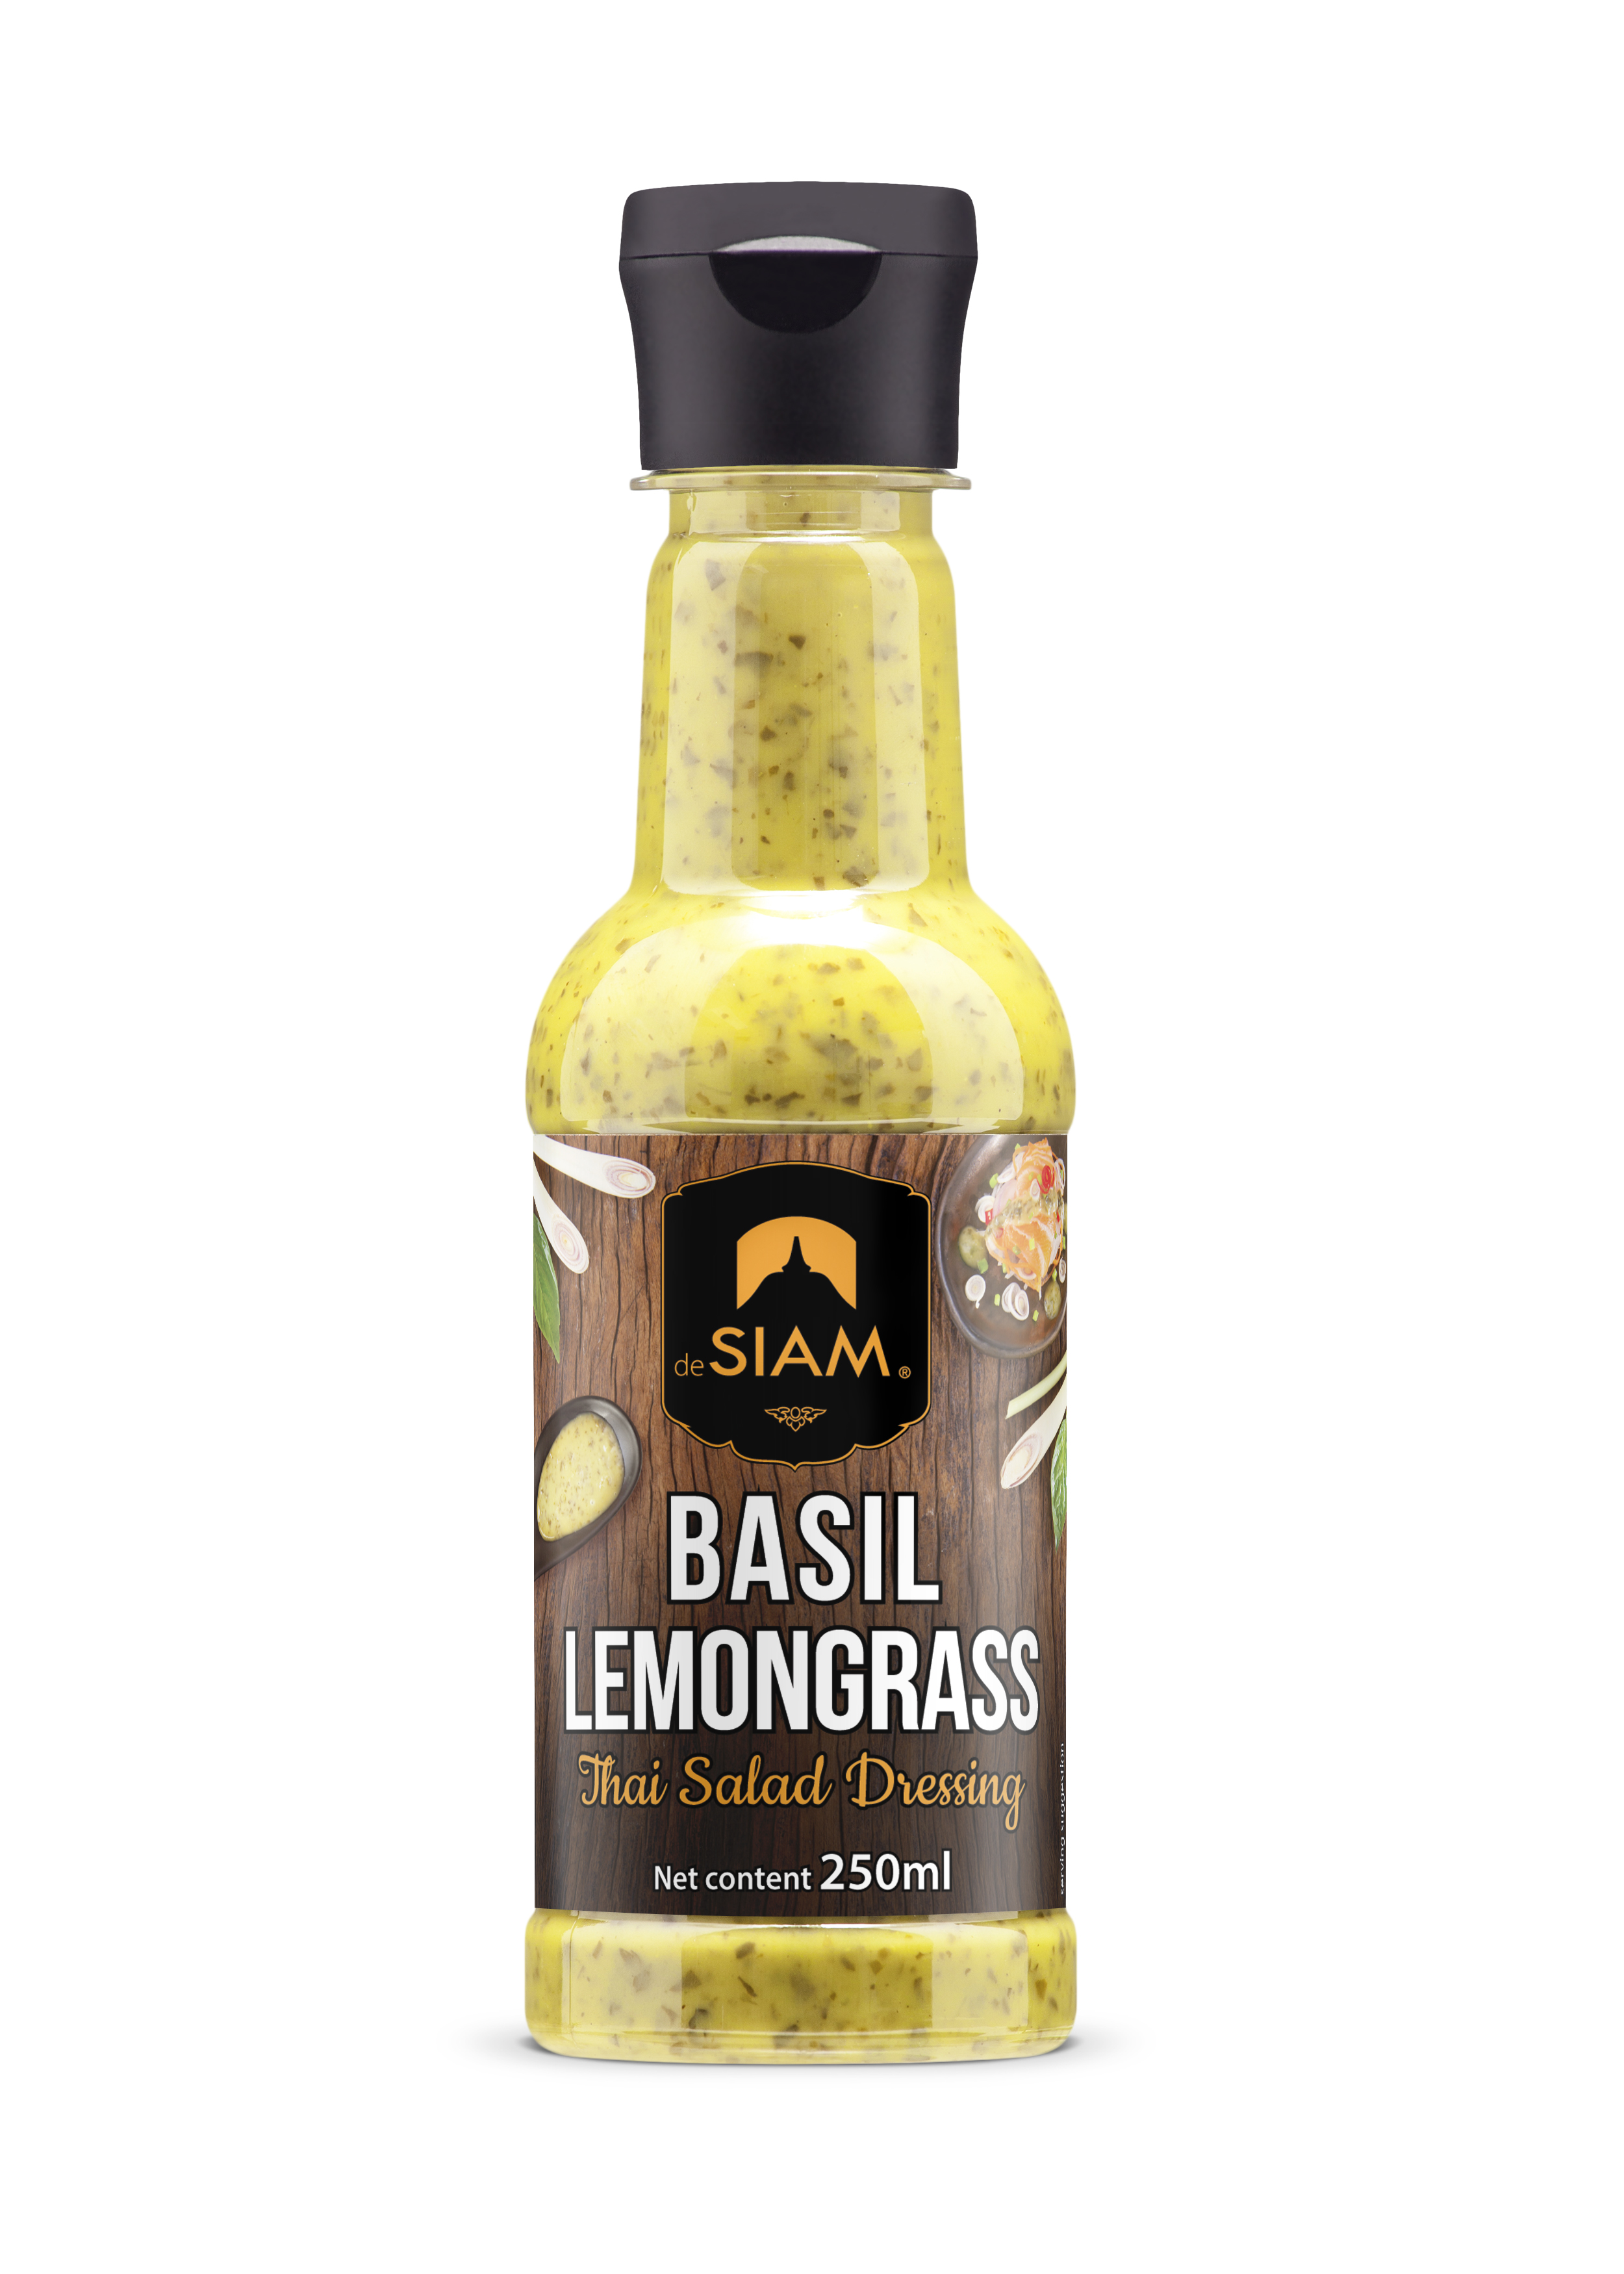 De Siam Lemongrass Dressing 250ml